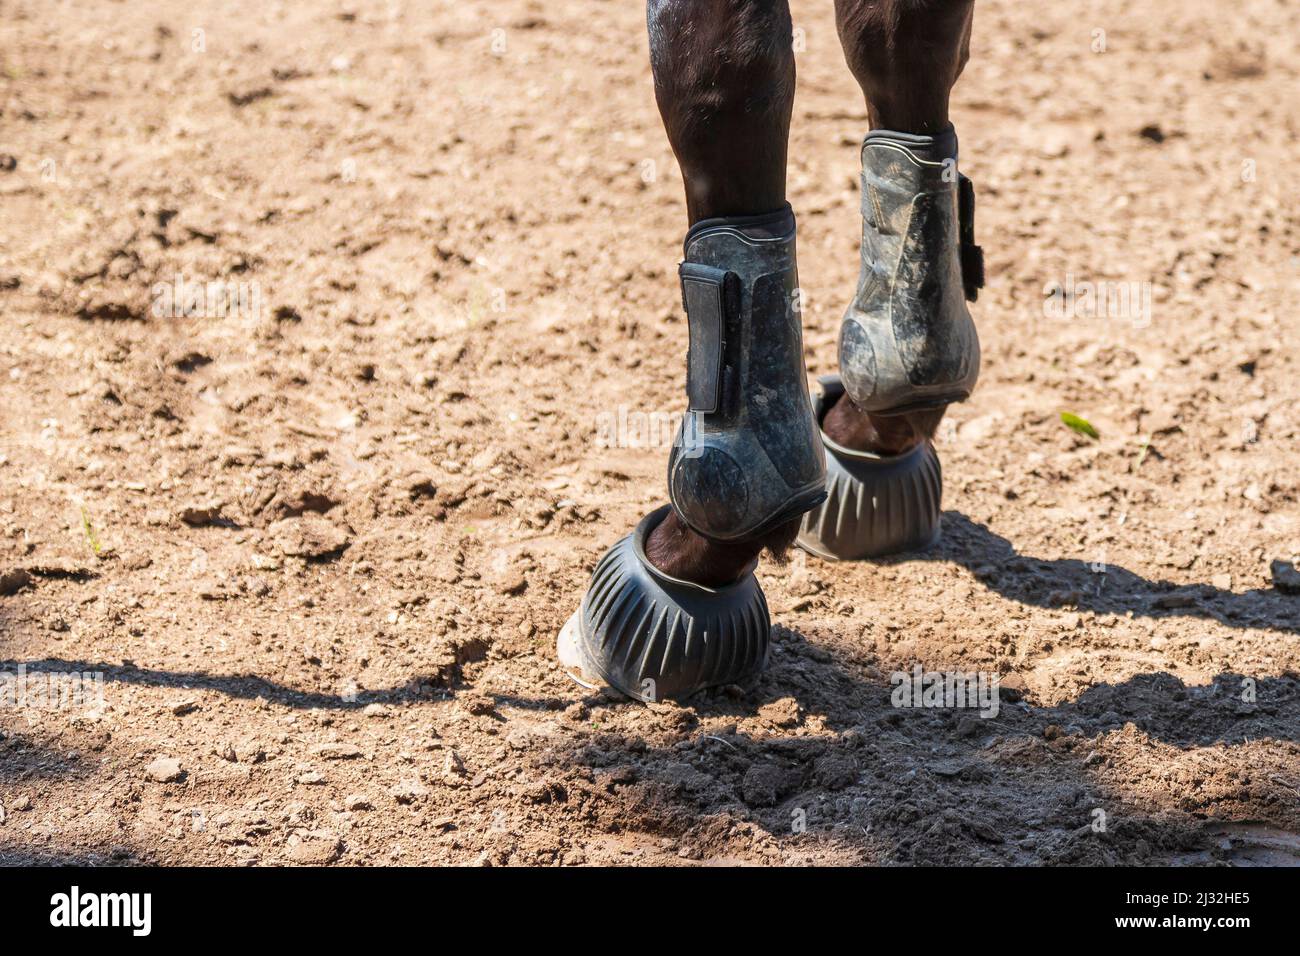 Primer plano del pie de un caballo. El caballo tiene protección contra la ortesis y el pezuelo en la pierna. Foto de stock